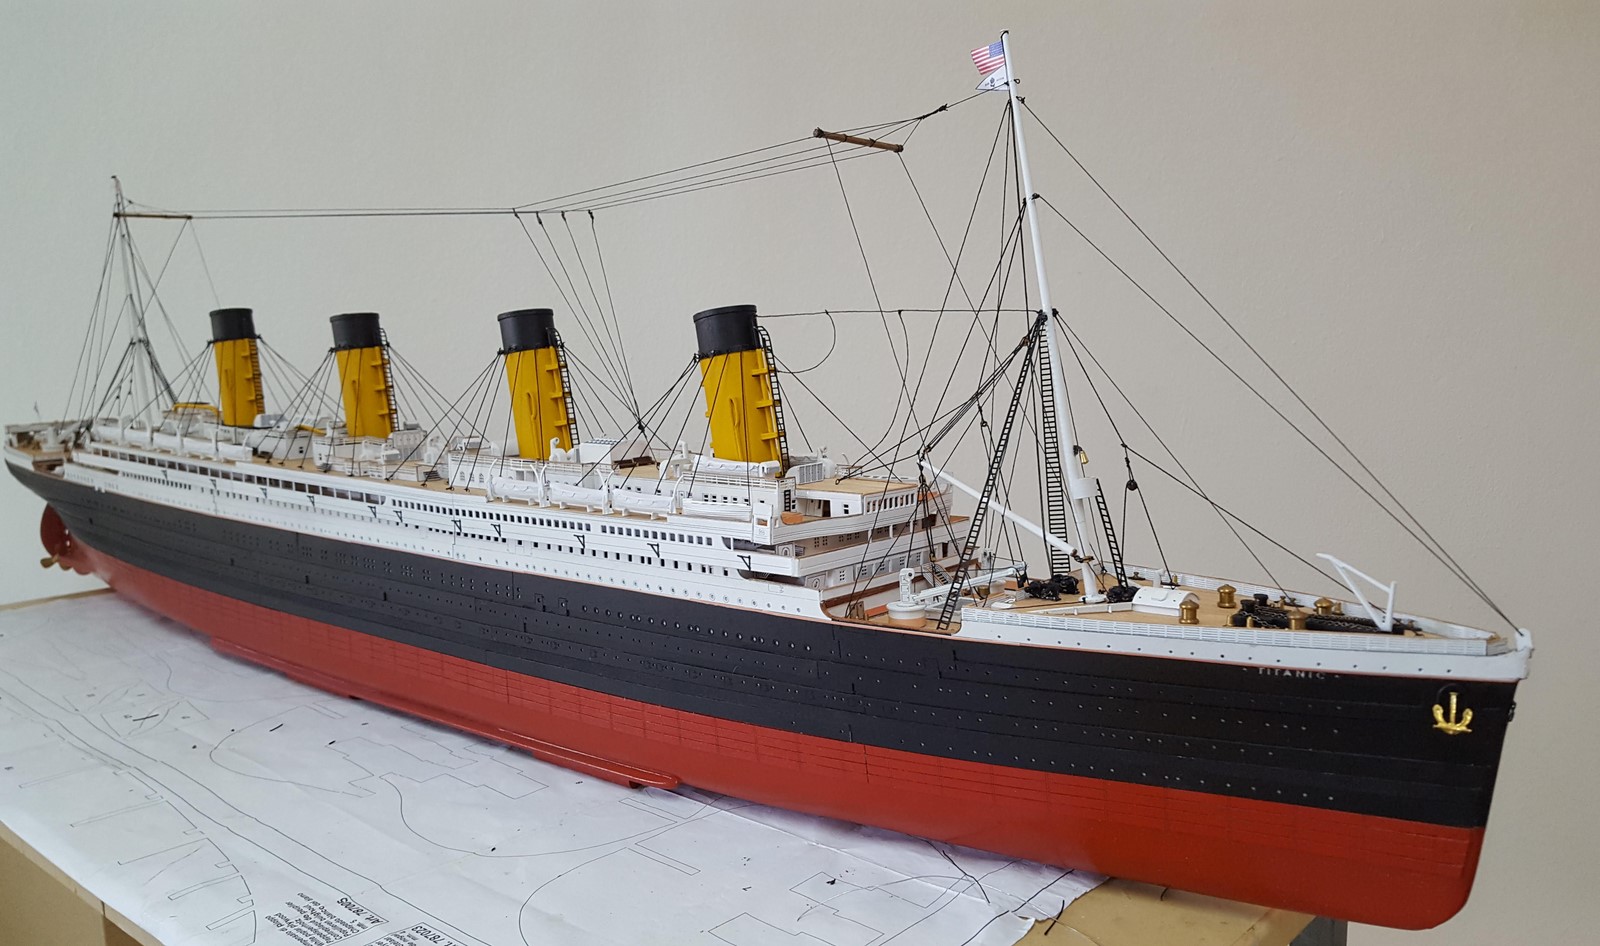 Maquette Titanic Maquette du célèbre paquebot Titanic, …